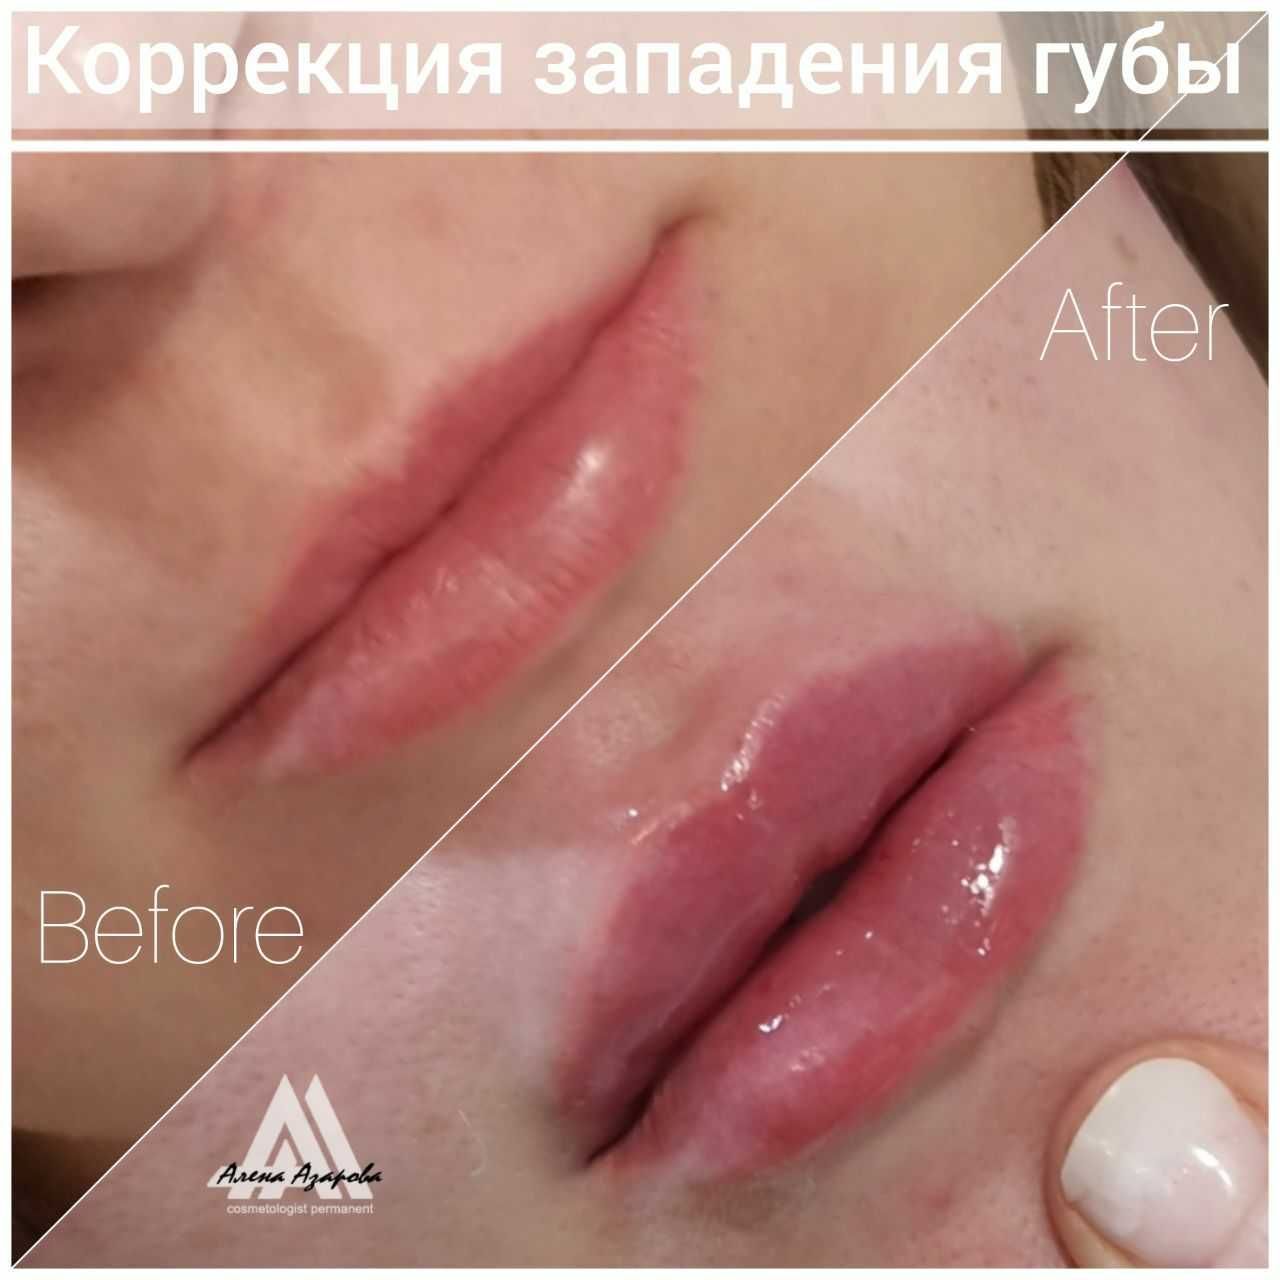 Косметолог. Контурная пластика, увеличение губ. Работаю р-н Госпрома.